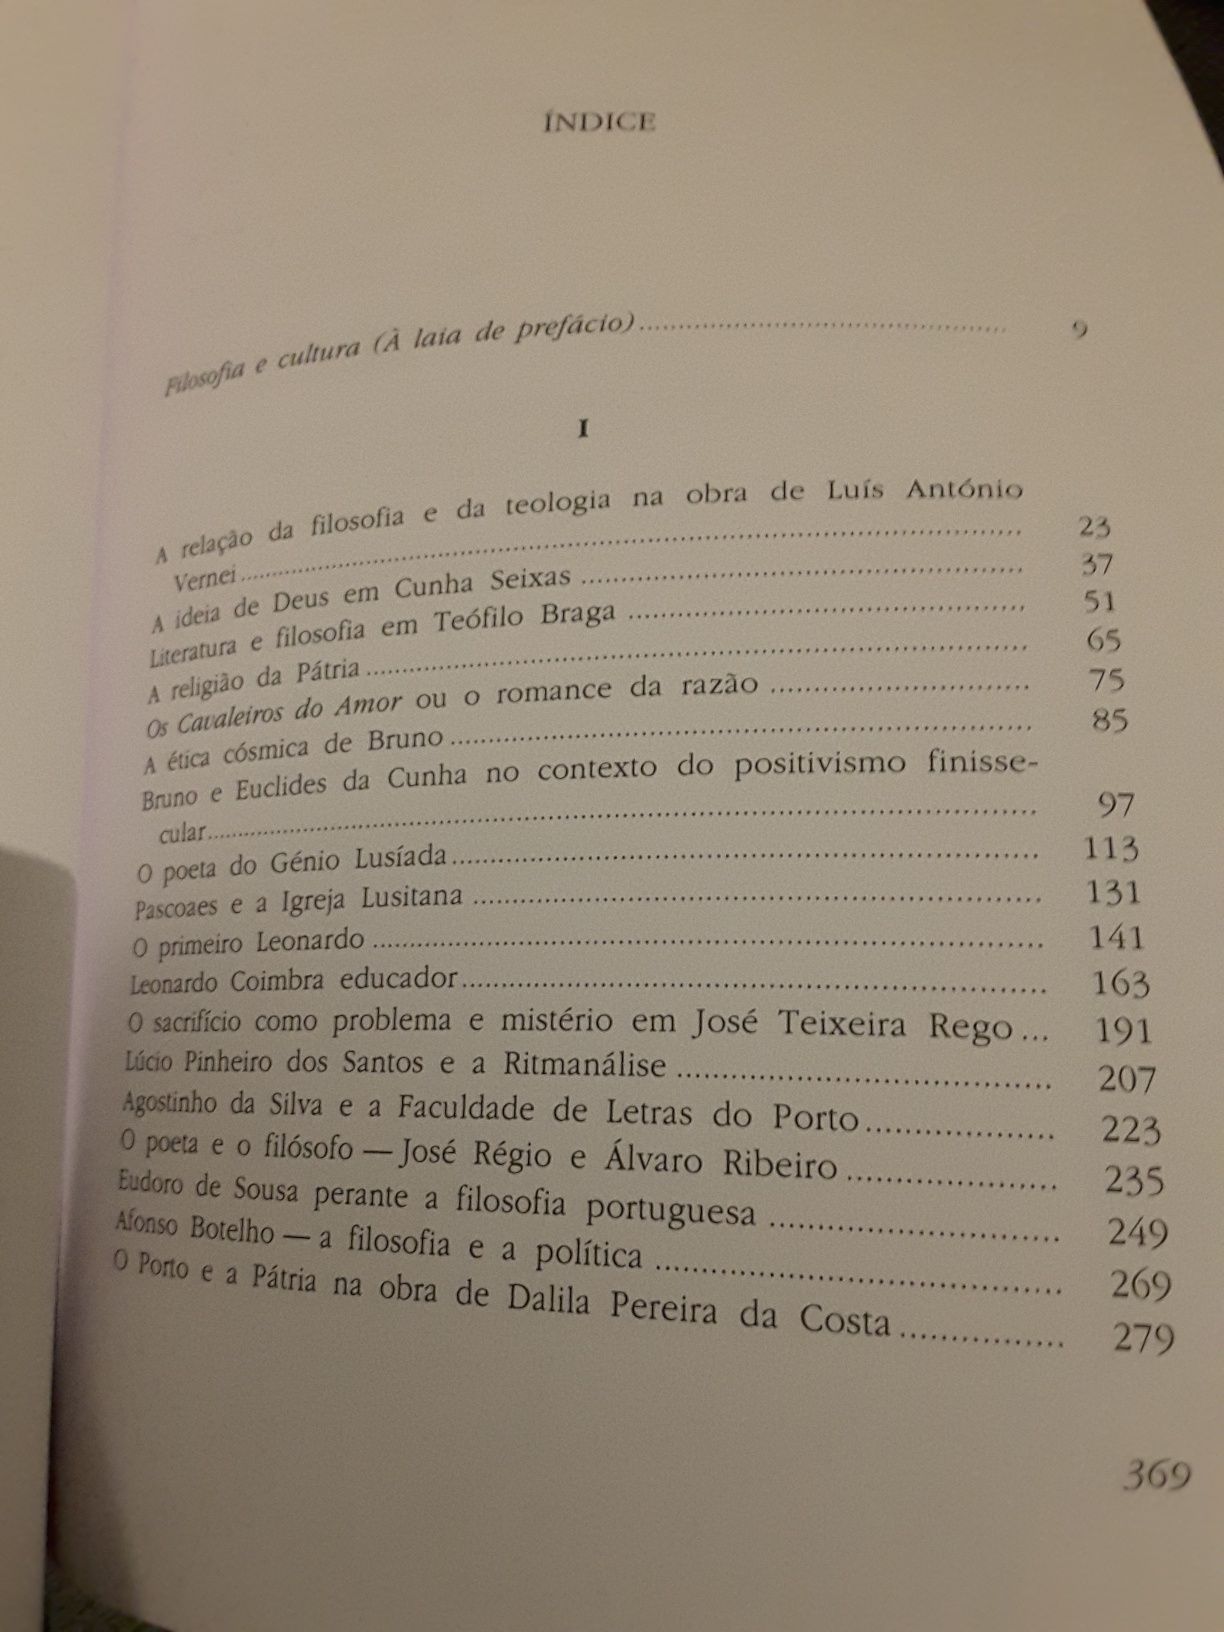 De Ourique ao Quinto Império / Joaquim de Carvalho: Filosofia